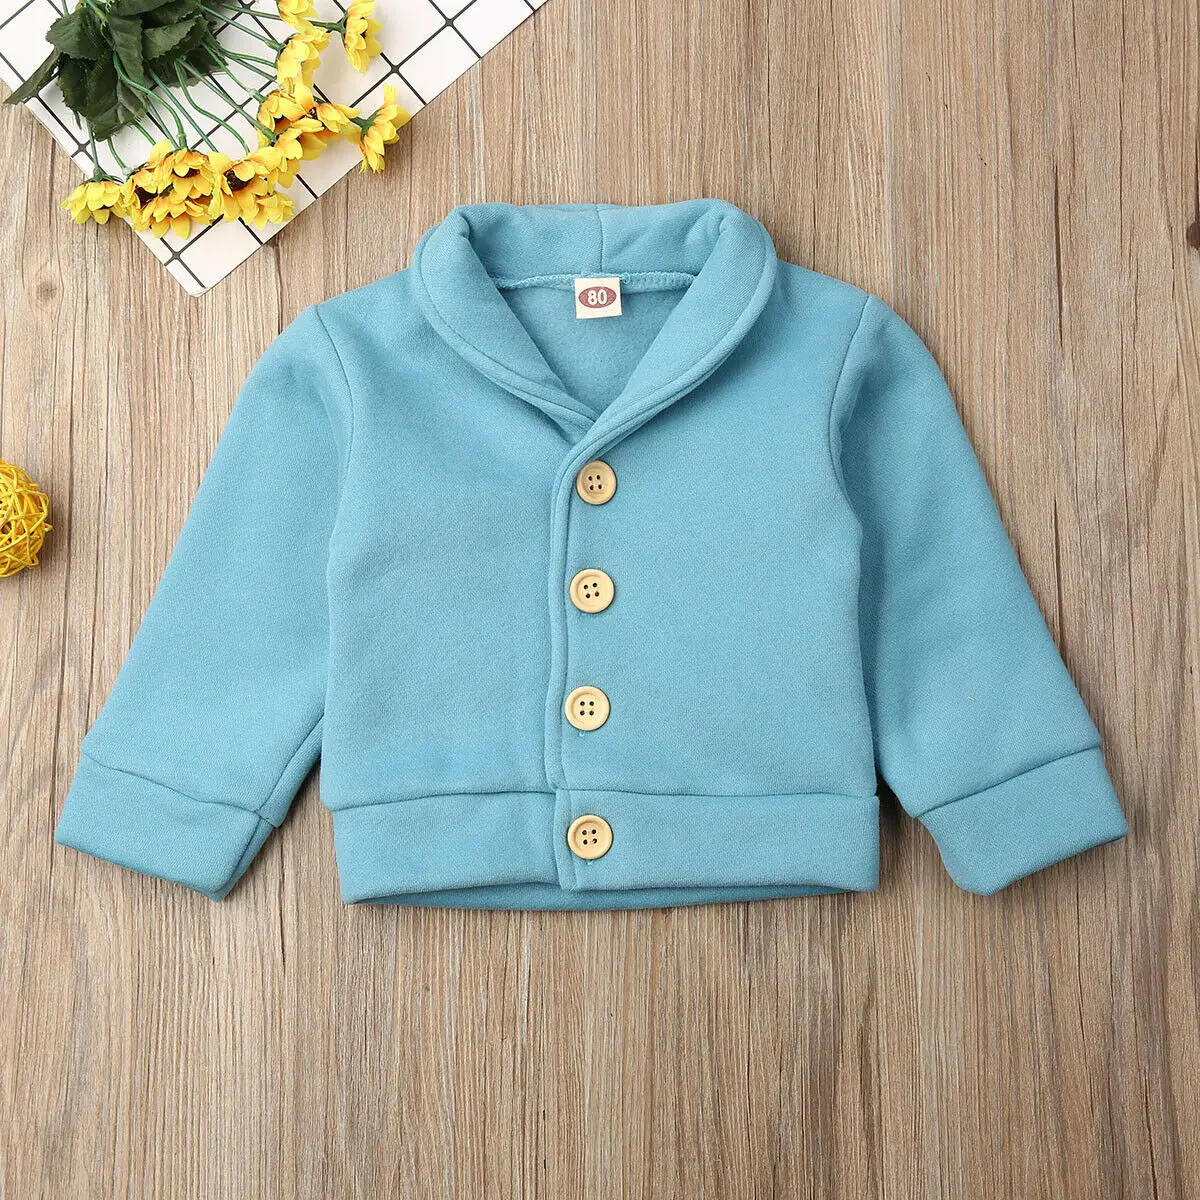 Imcute одежда для маленьких мальчиков хлопковый свитер с длинными рукавами теплая верхняя одежда - Цвет: Небесно-голубой